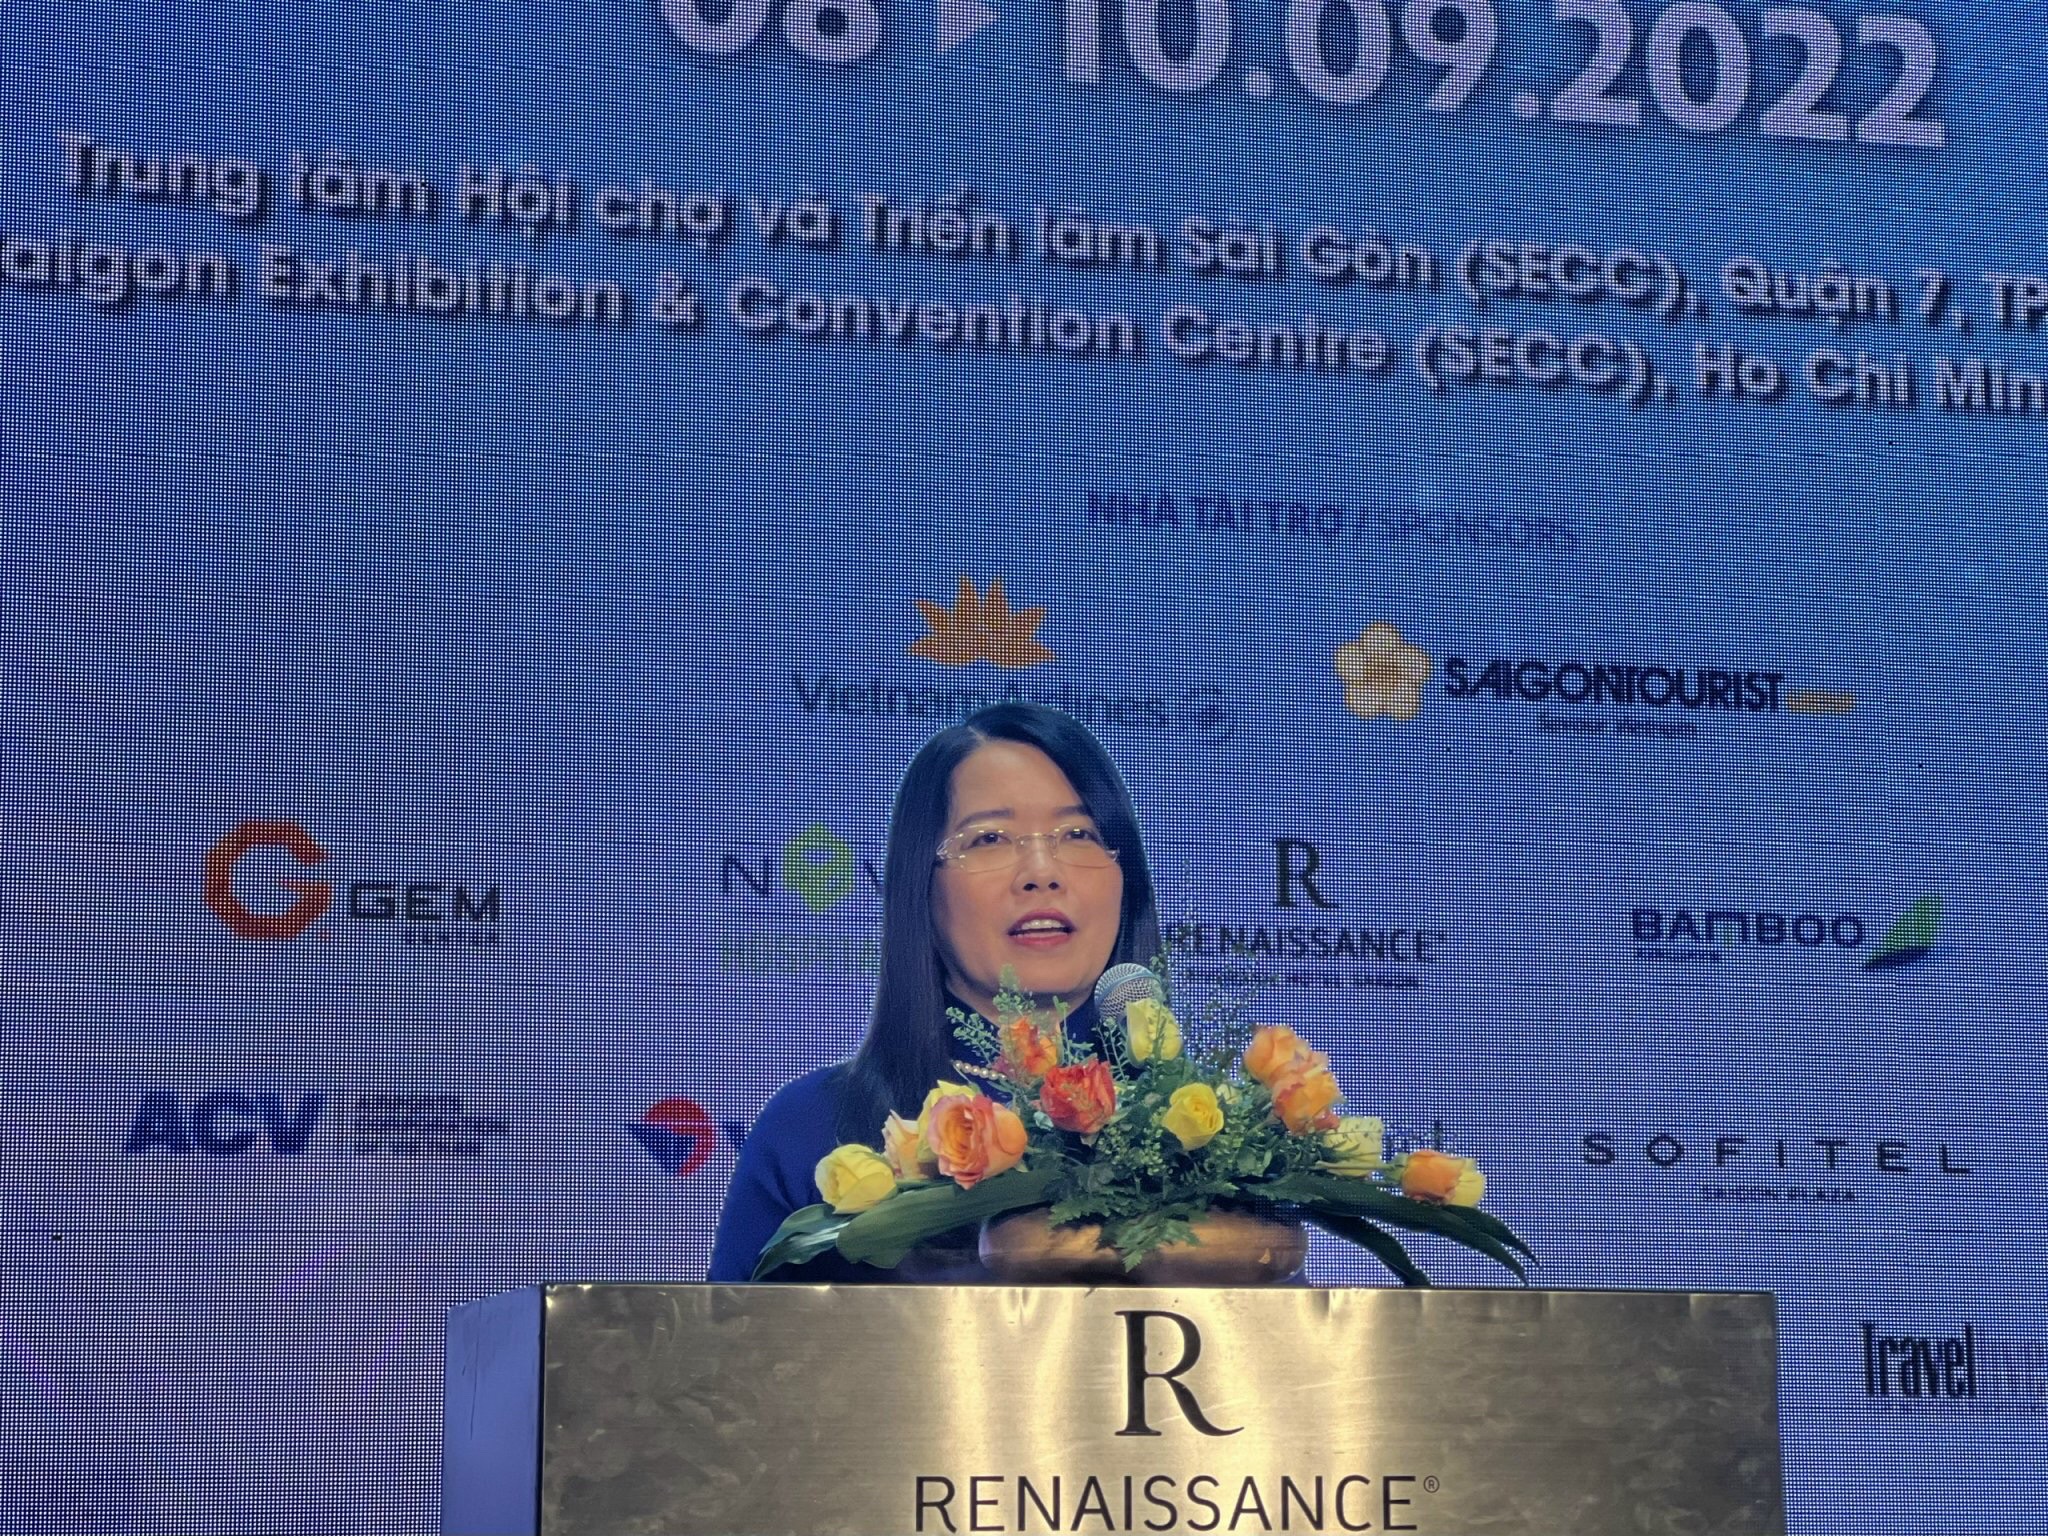 Bà Nguyễn Thị Ánh Hoa – Giám đốc Sở Du lịch TP. Hồ Chí Minh cho biết, Hội chợ ITE HCMC là sự kiện du lịch quốc tế duy nhất tại Việt Nam có chương trình Người mua quốc tế.